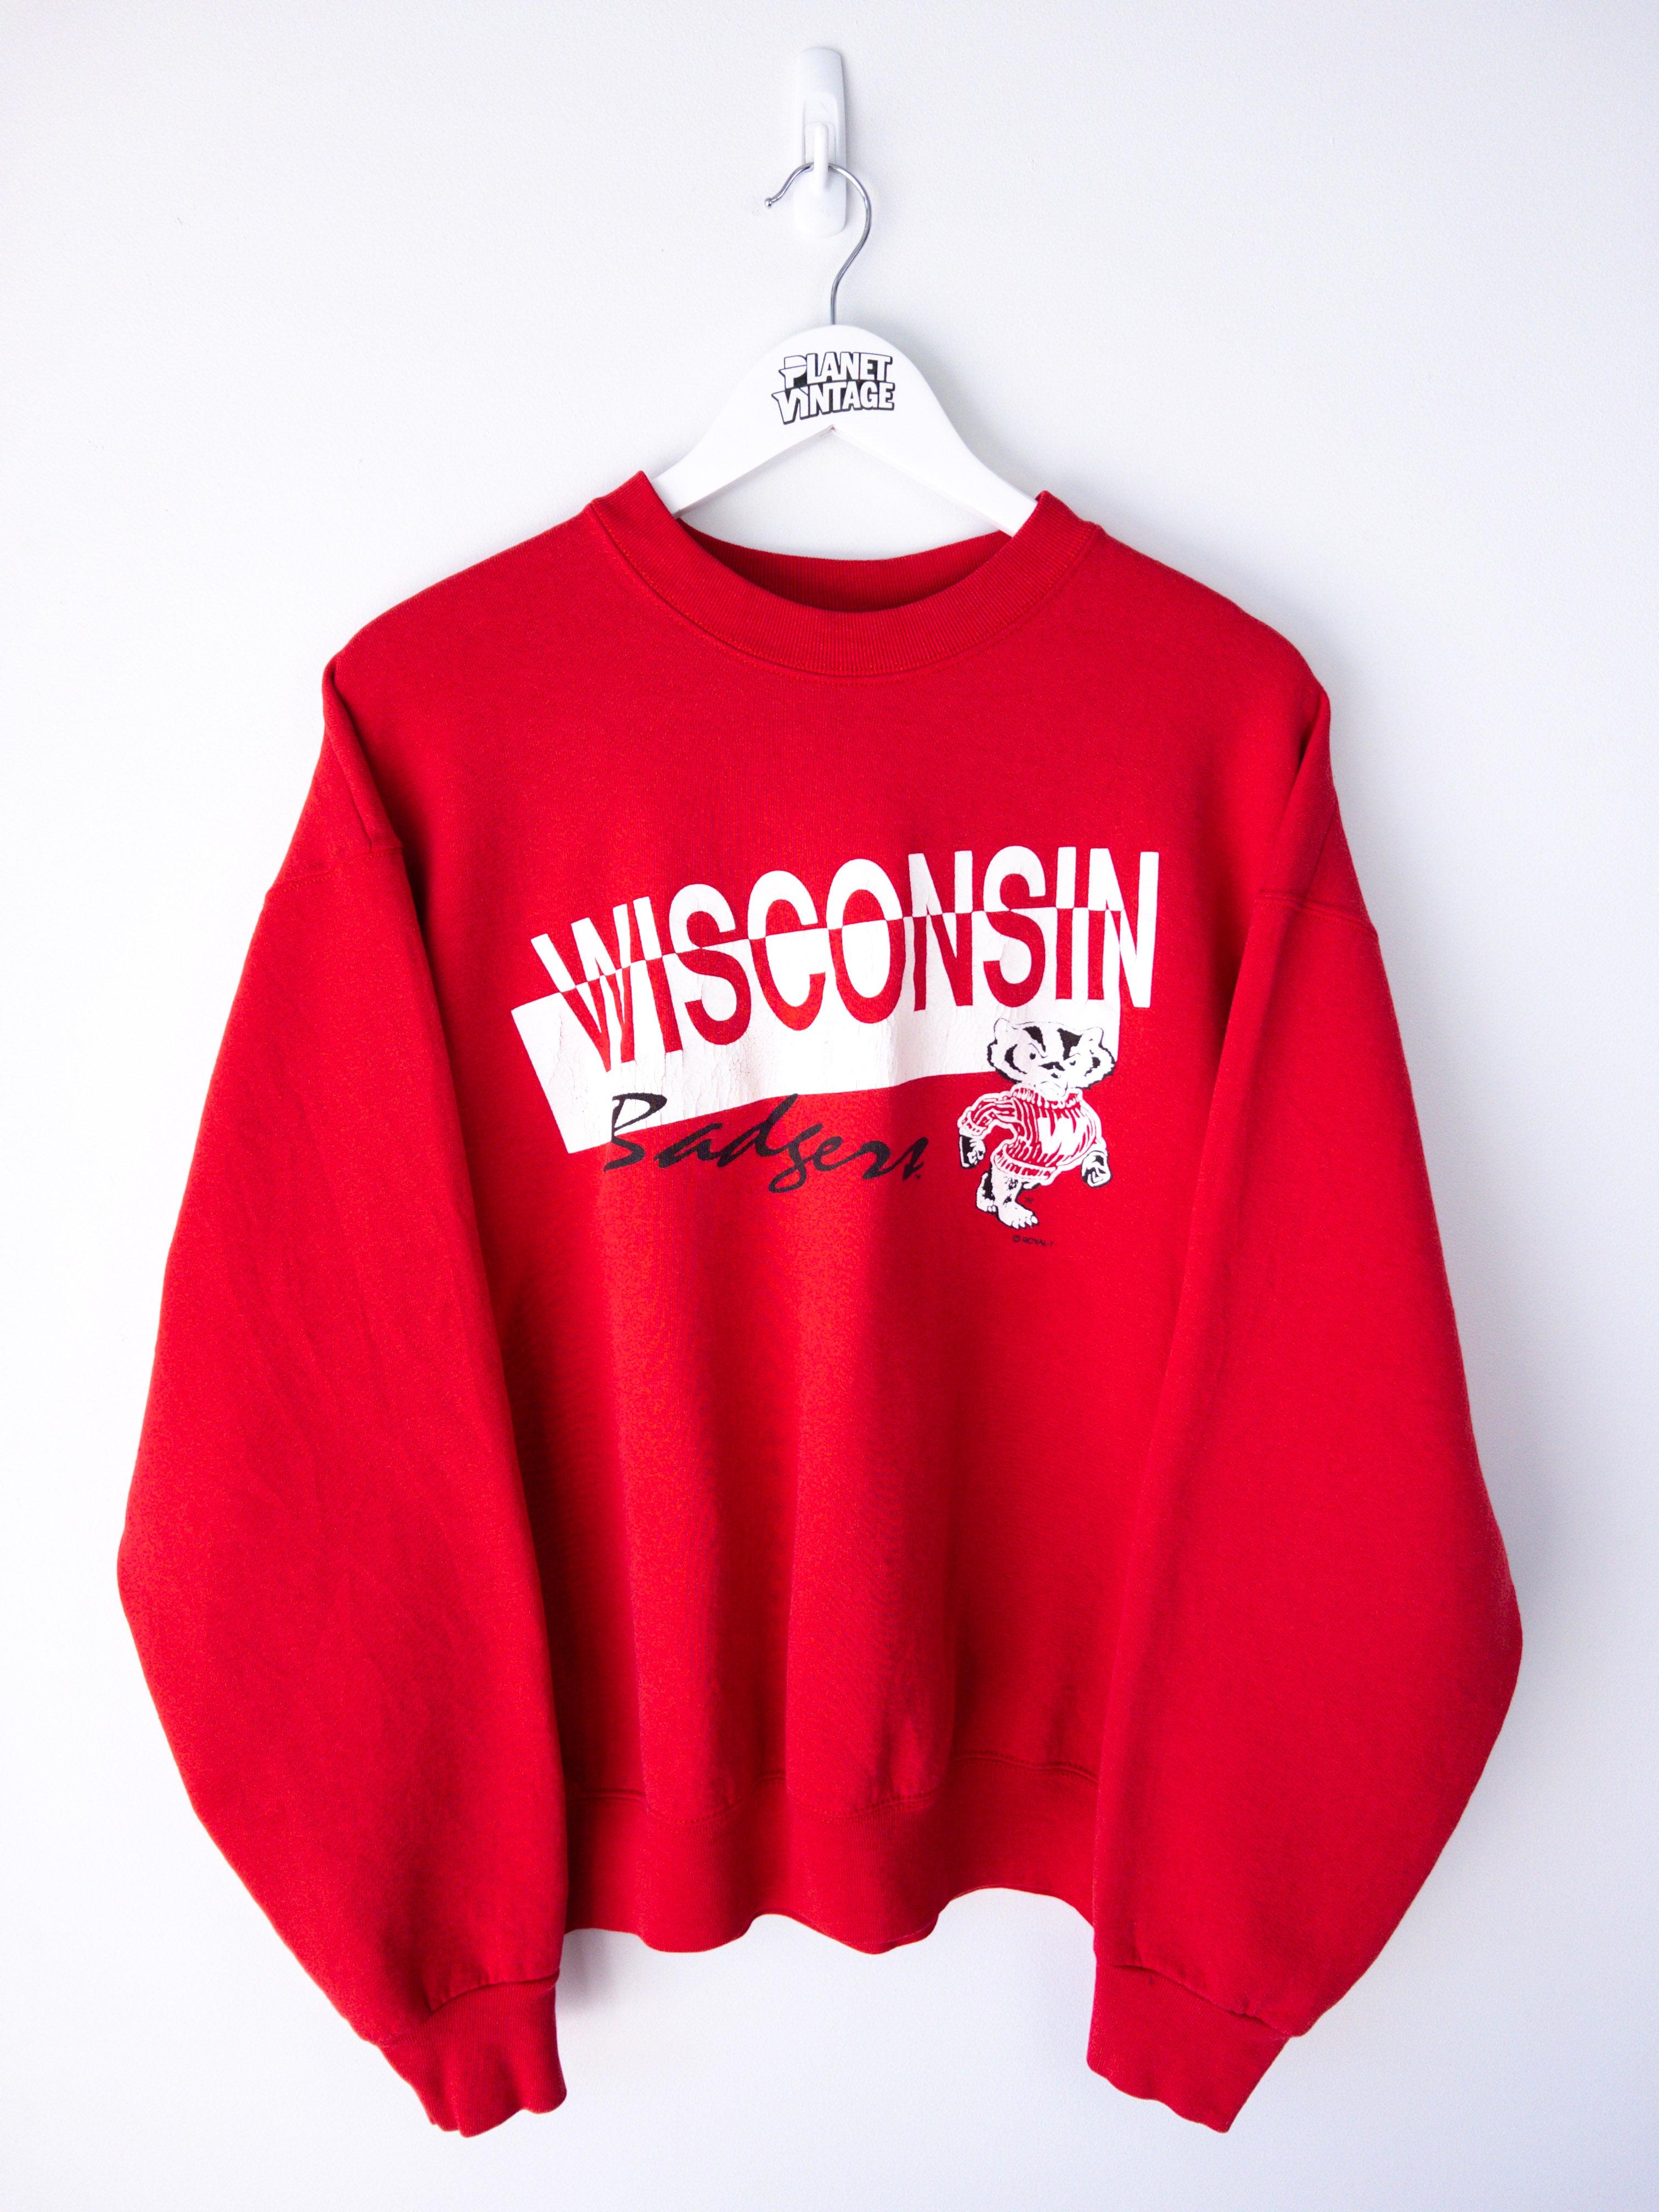 Wisconsin Badgers Sweatshirt (XL) - Planet Vintage Store